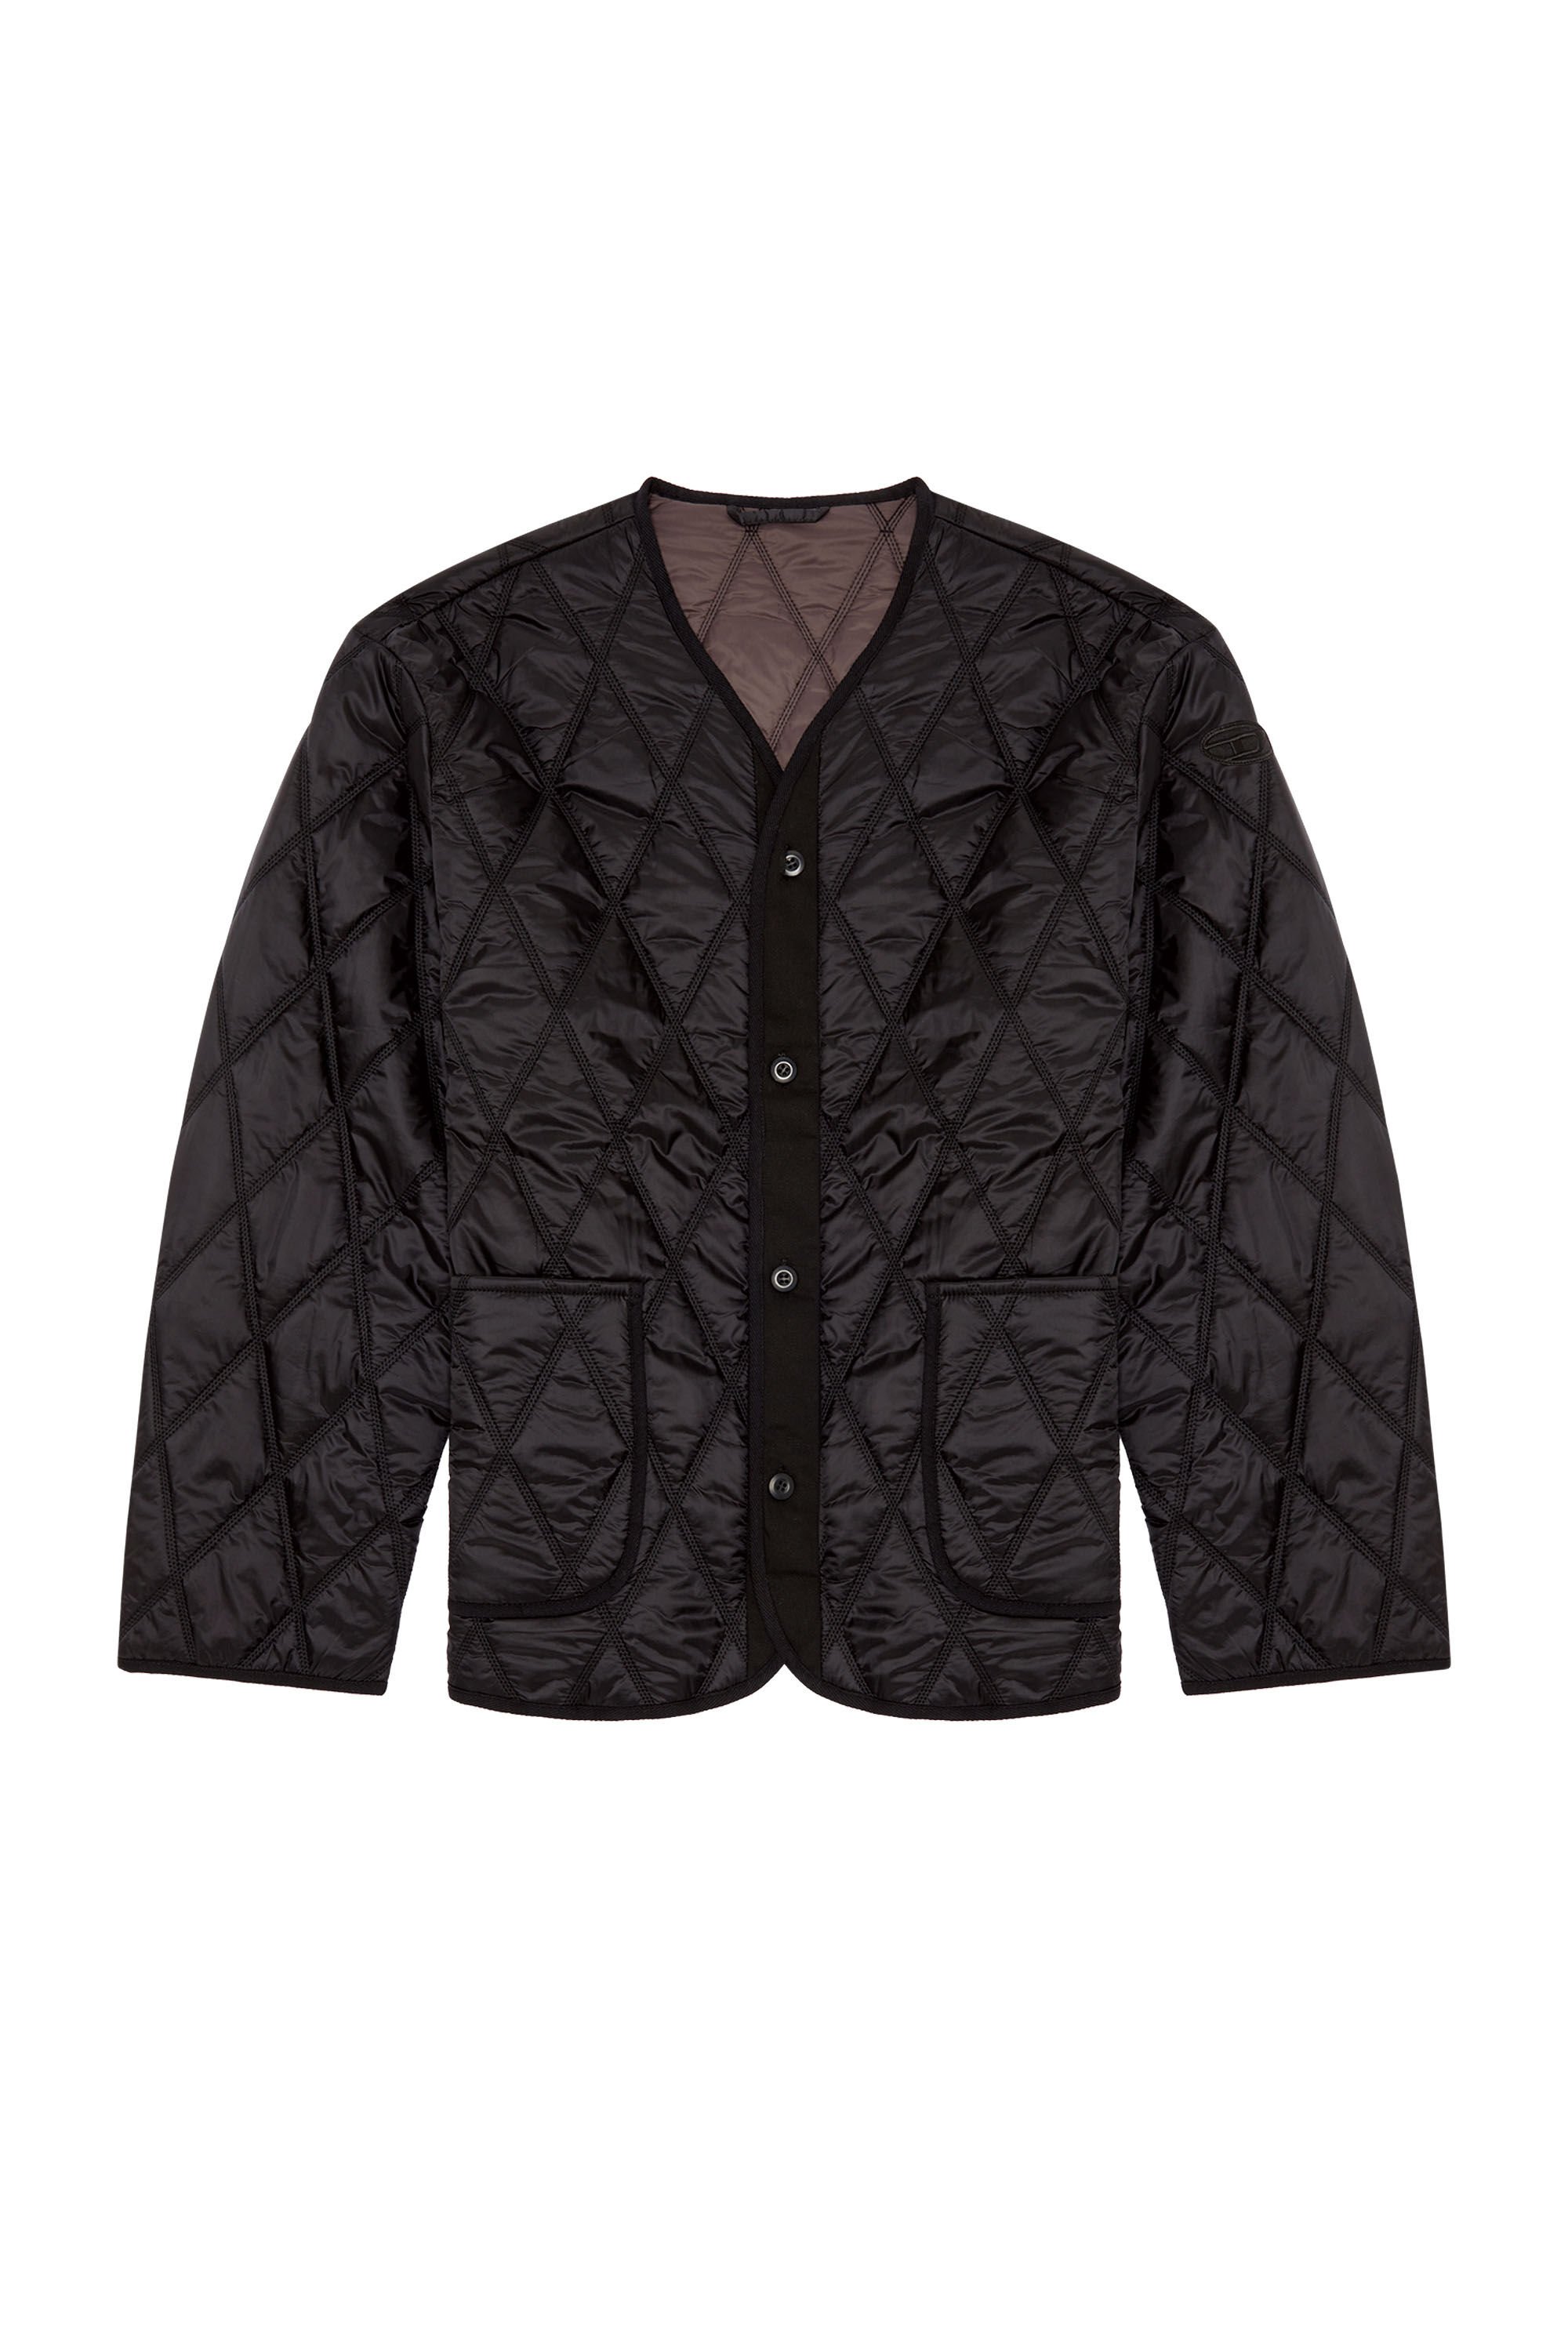 Diesel - J-BOY, Man V-neck jacket in quilted nylon in Black - Image 2